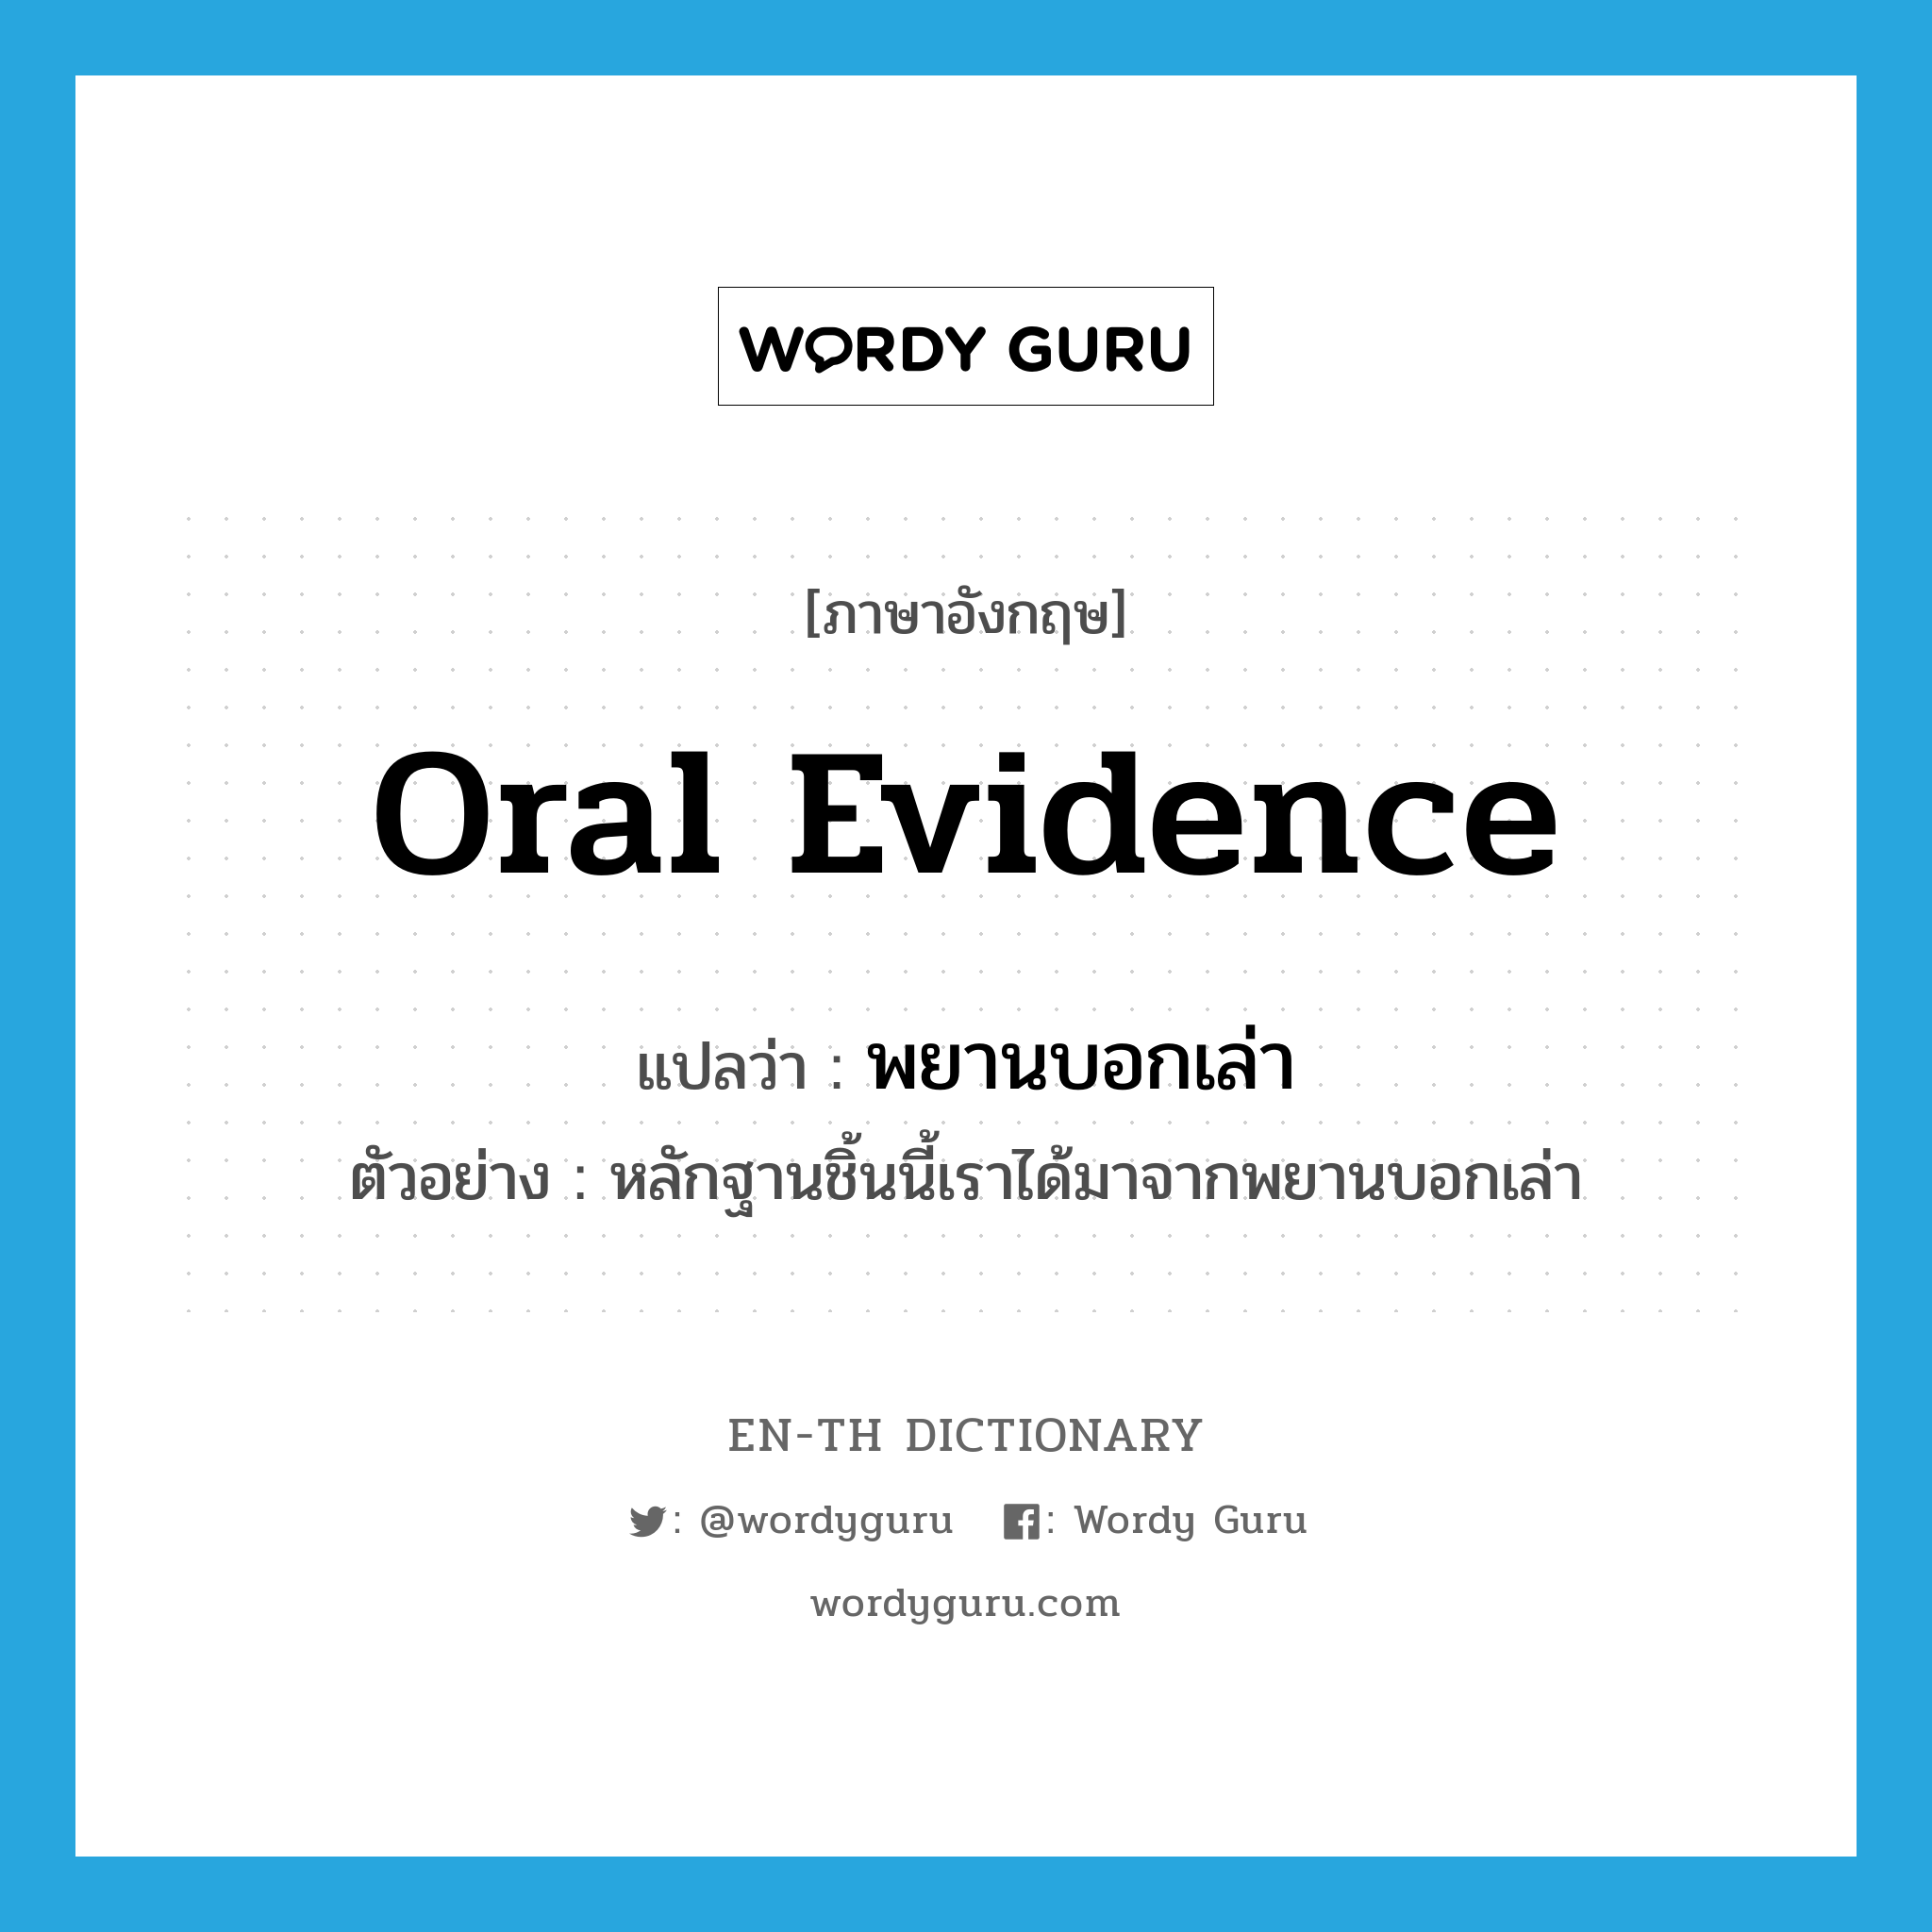 oral evidence แปลว่า?, คำศัพท์ภาษาอังกฤษ oral evidence แปลว่า พยานบอกเล่า ประเภท N ตัวอย่าง หลักฐานชิ้นนี้เราได้มาจากพยานบอกเล่า หมวด N